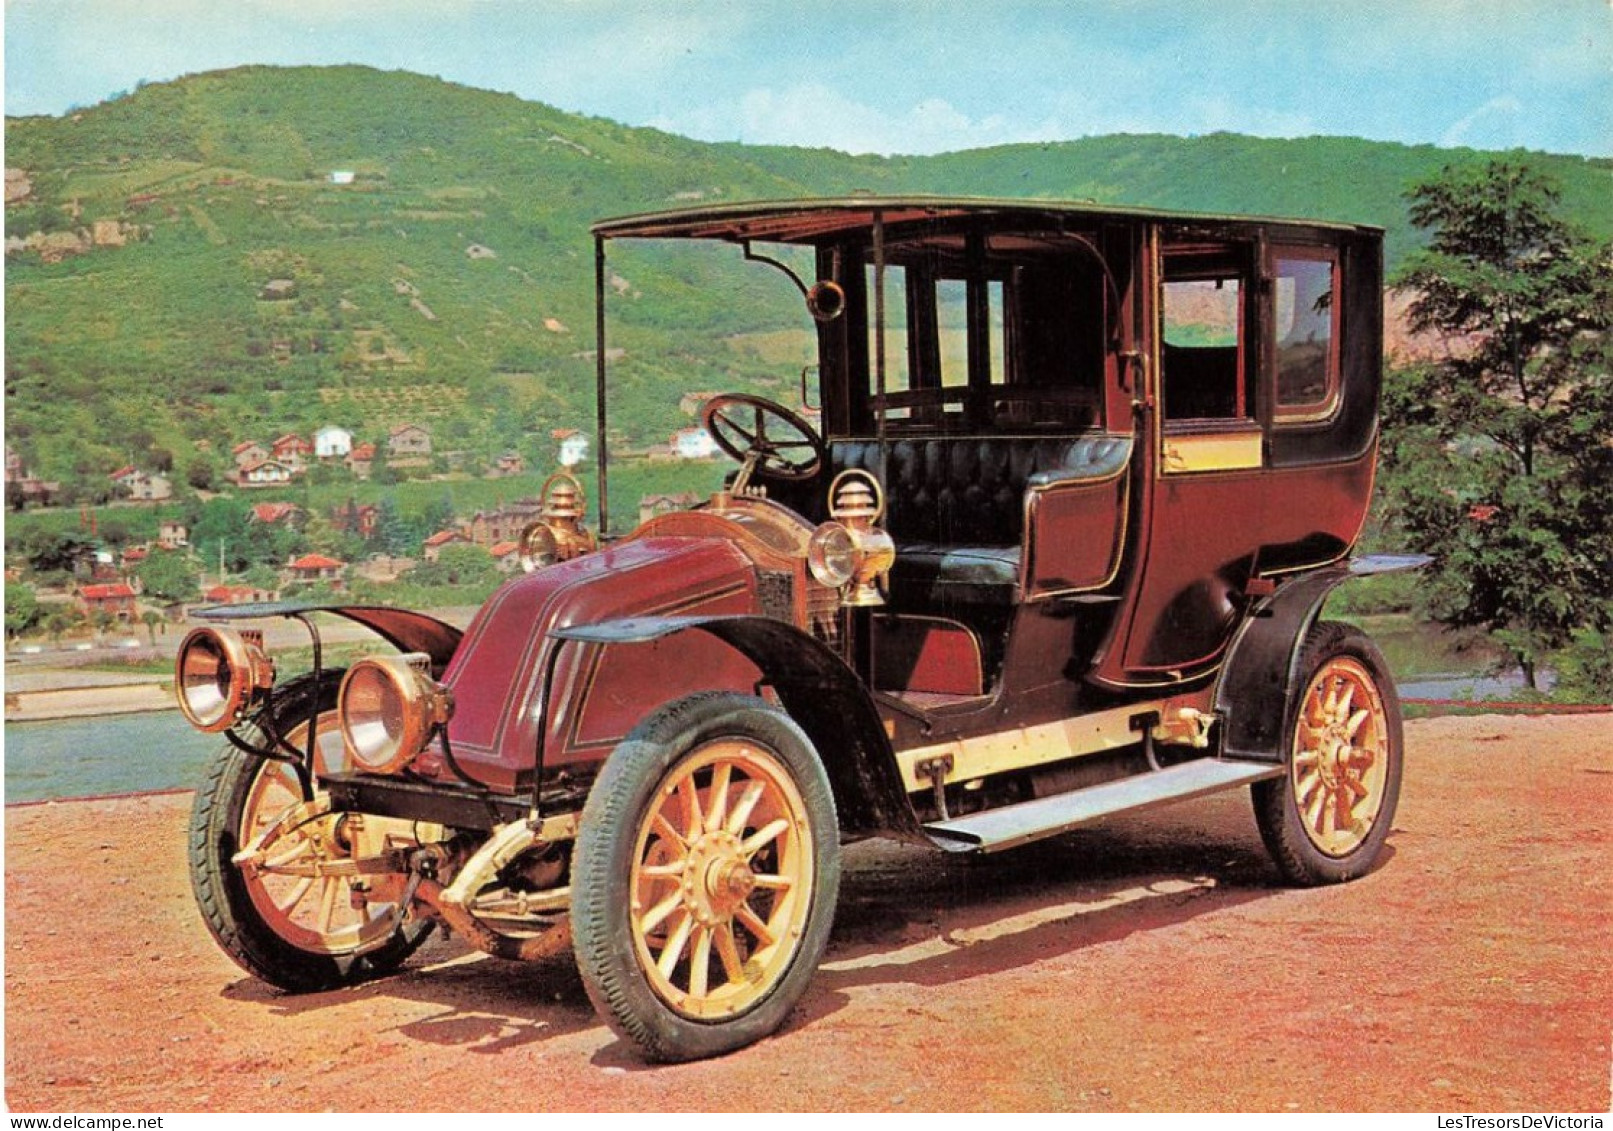 TRANSPORT - Musée De L'automobile - Renault 1908 - Taxi De La Marne - Carte Postale - Taxis & Fiacres